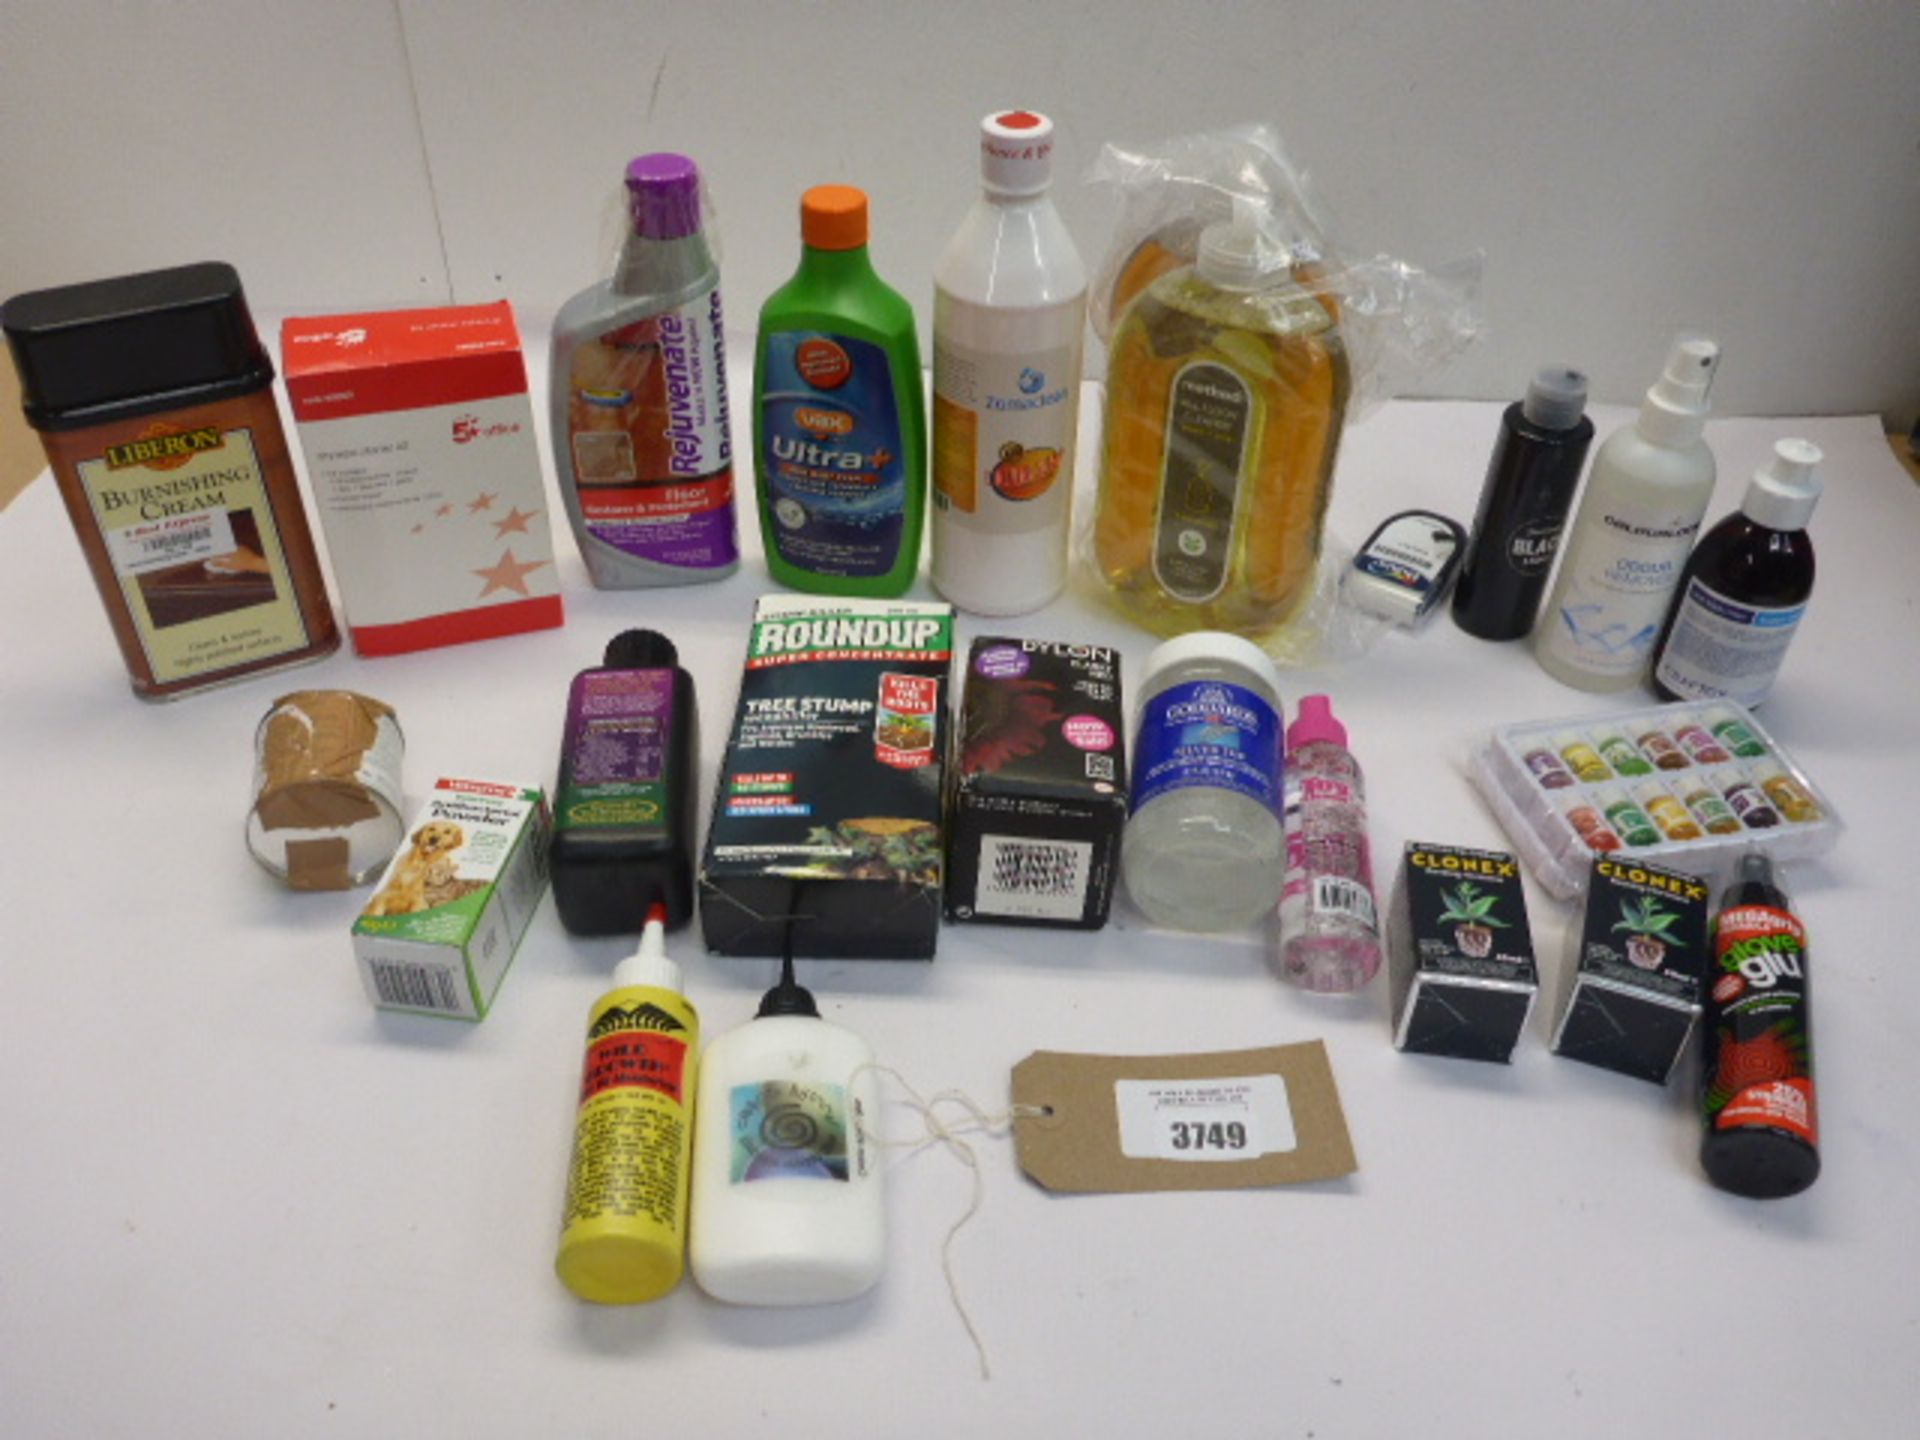 Bag containing household cleaner, odour remover, week killer, drywipe starter kit, dye etc